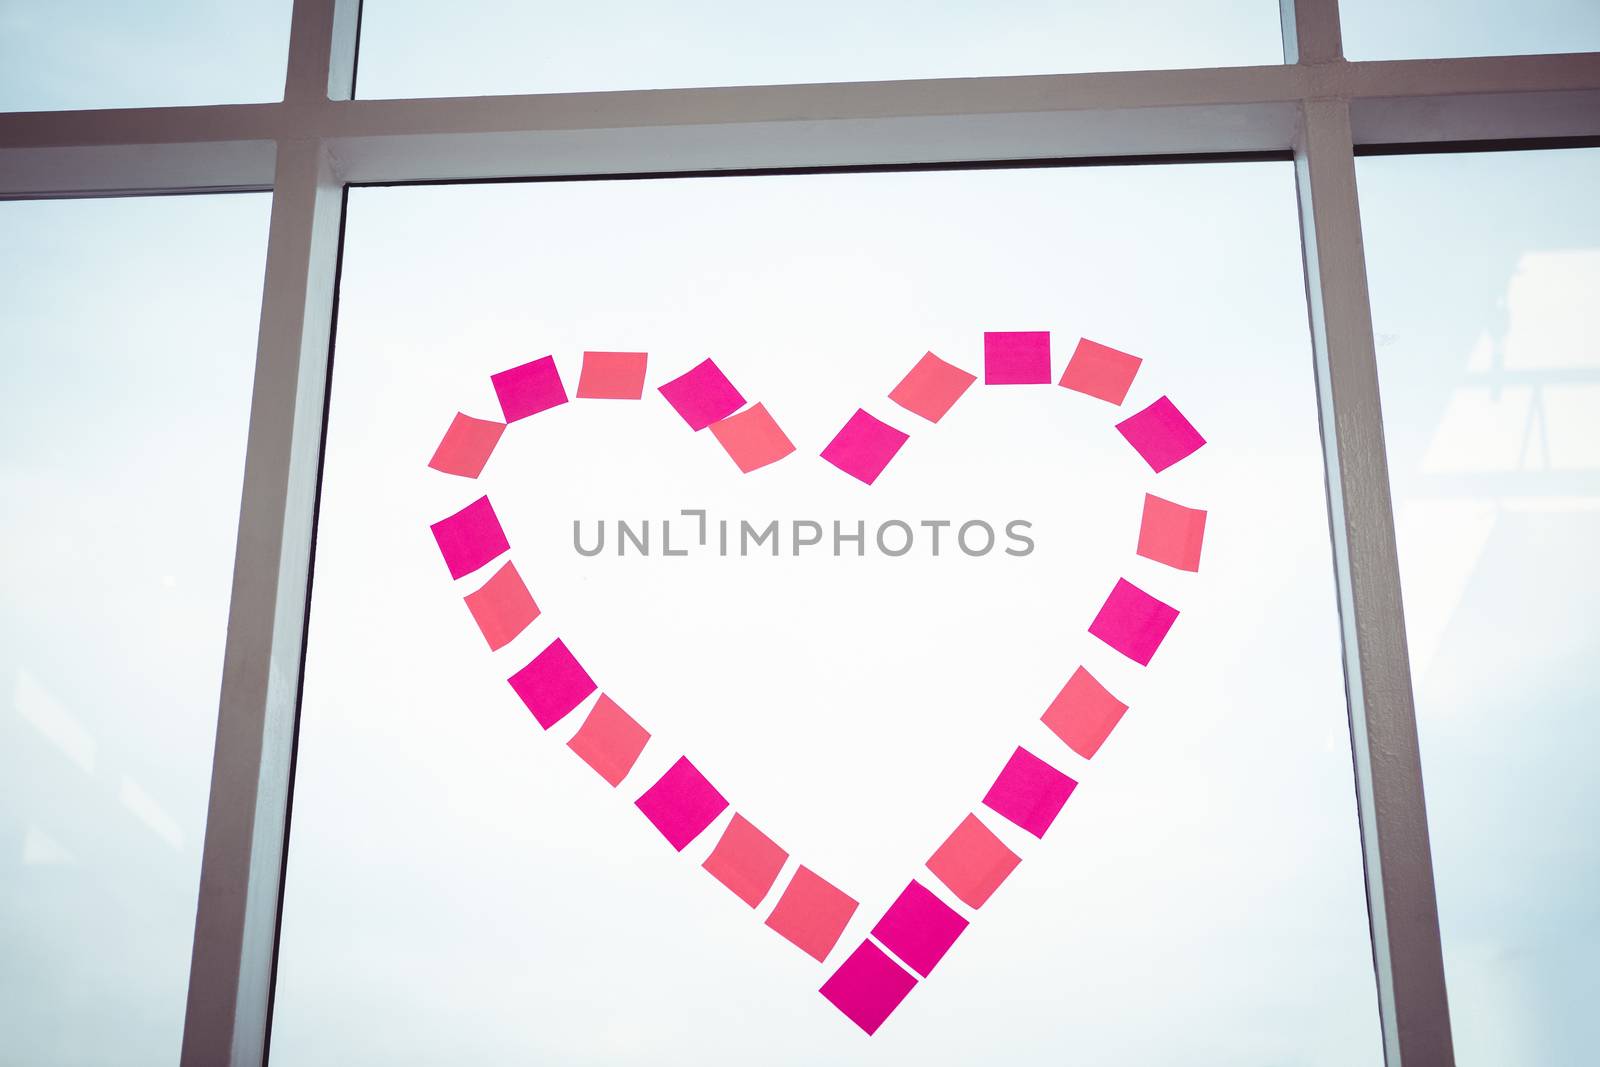 Heart in post-it on a window in office